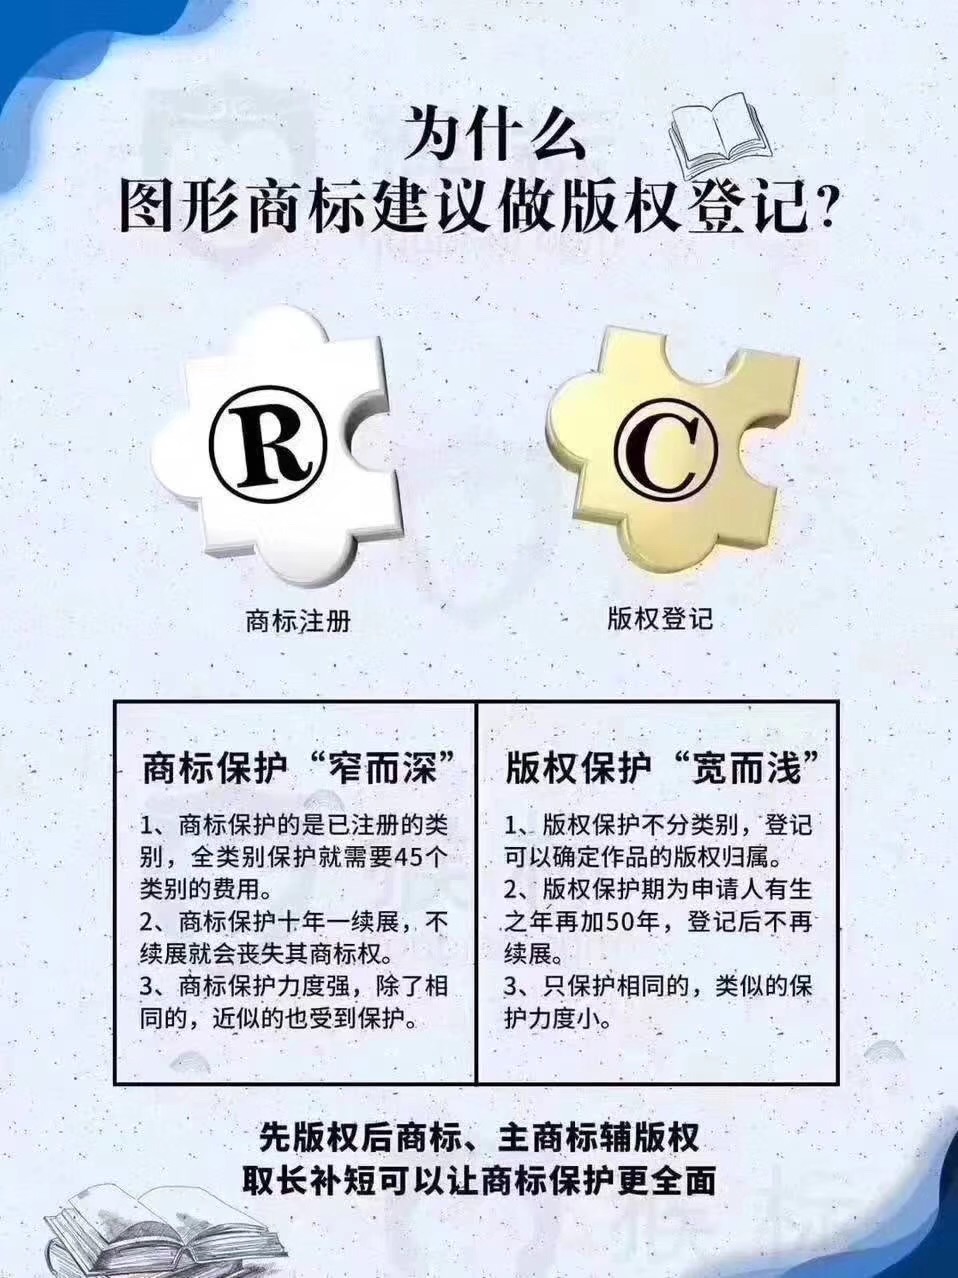 長春中國商標網商標查詢系統